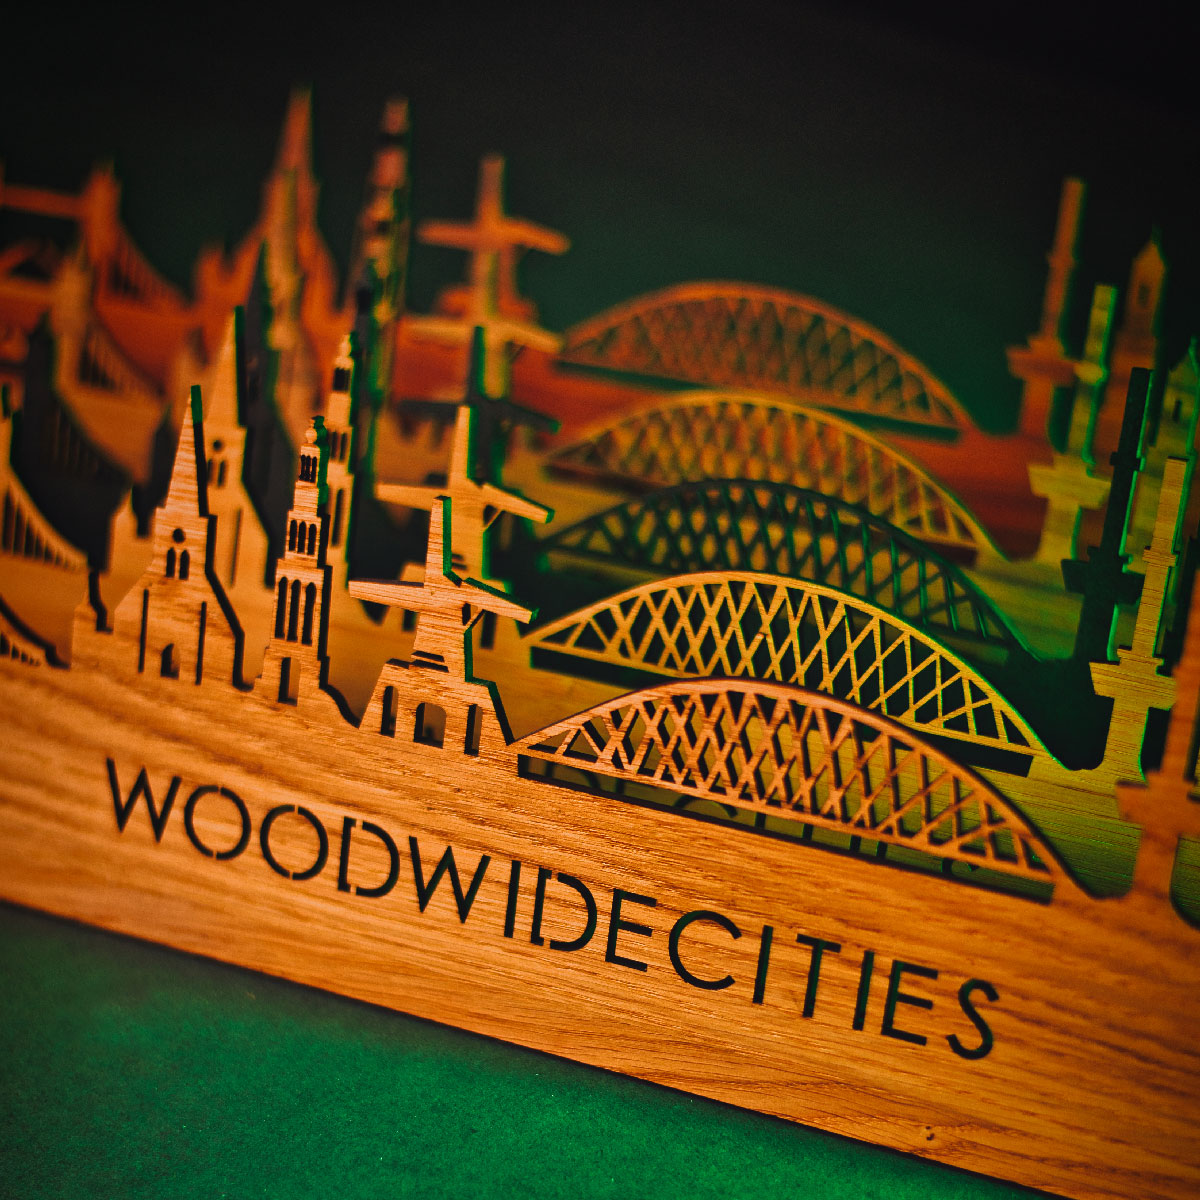 Skyline Klok Vianen Black Zwart houten cadeau wanddecoratie relatiegeschenk van WoodWideCities